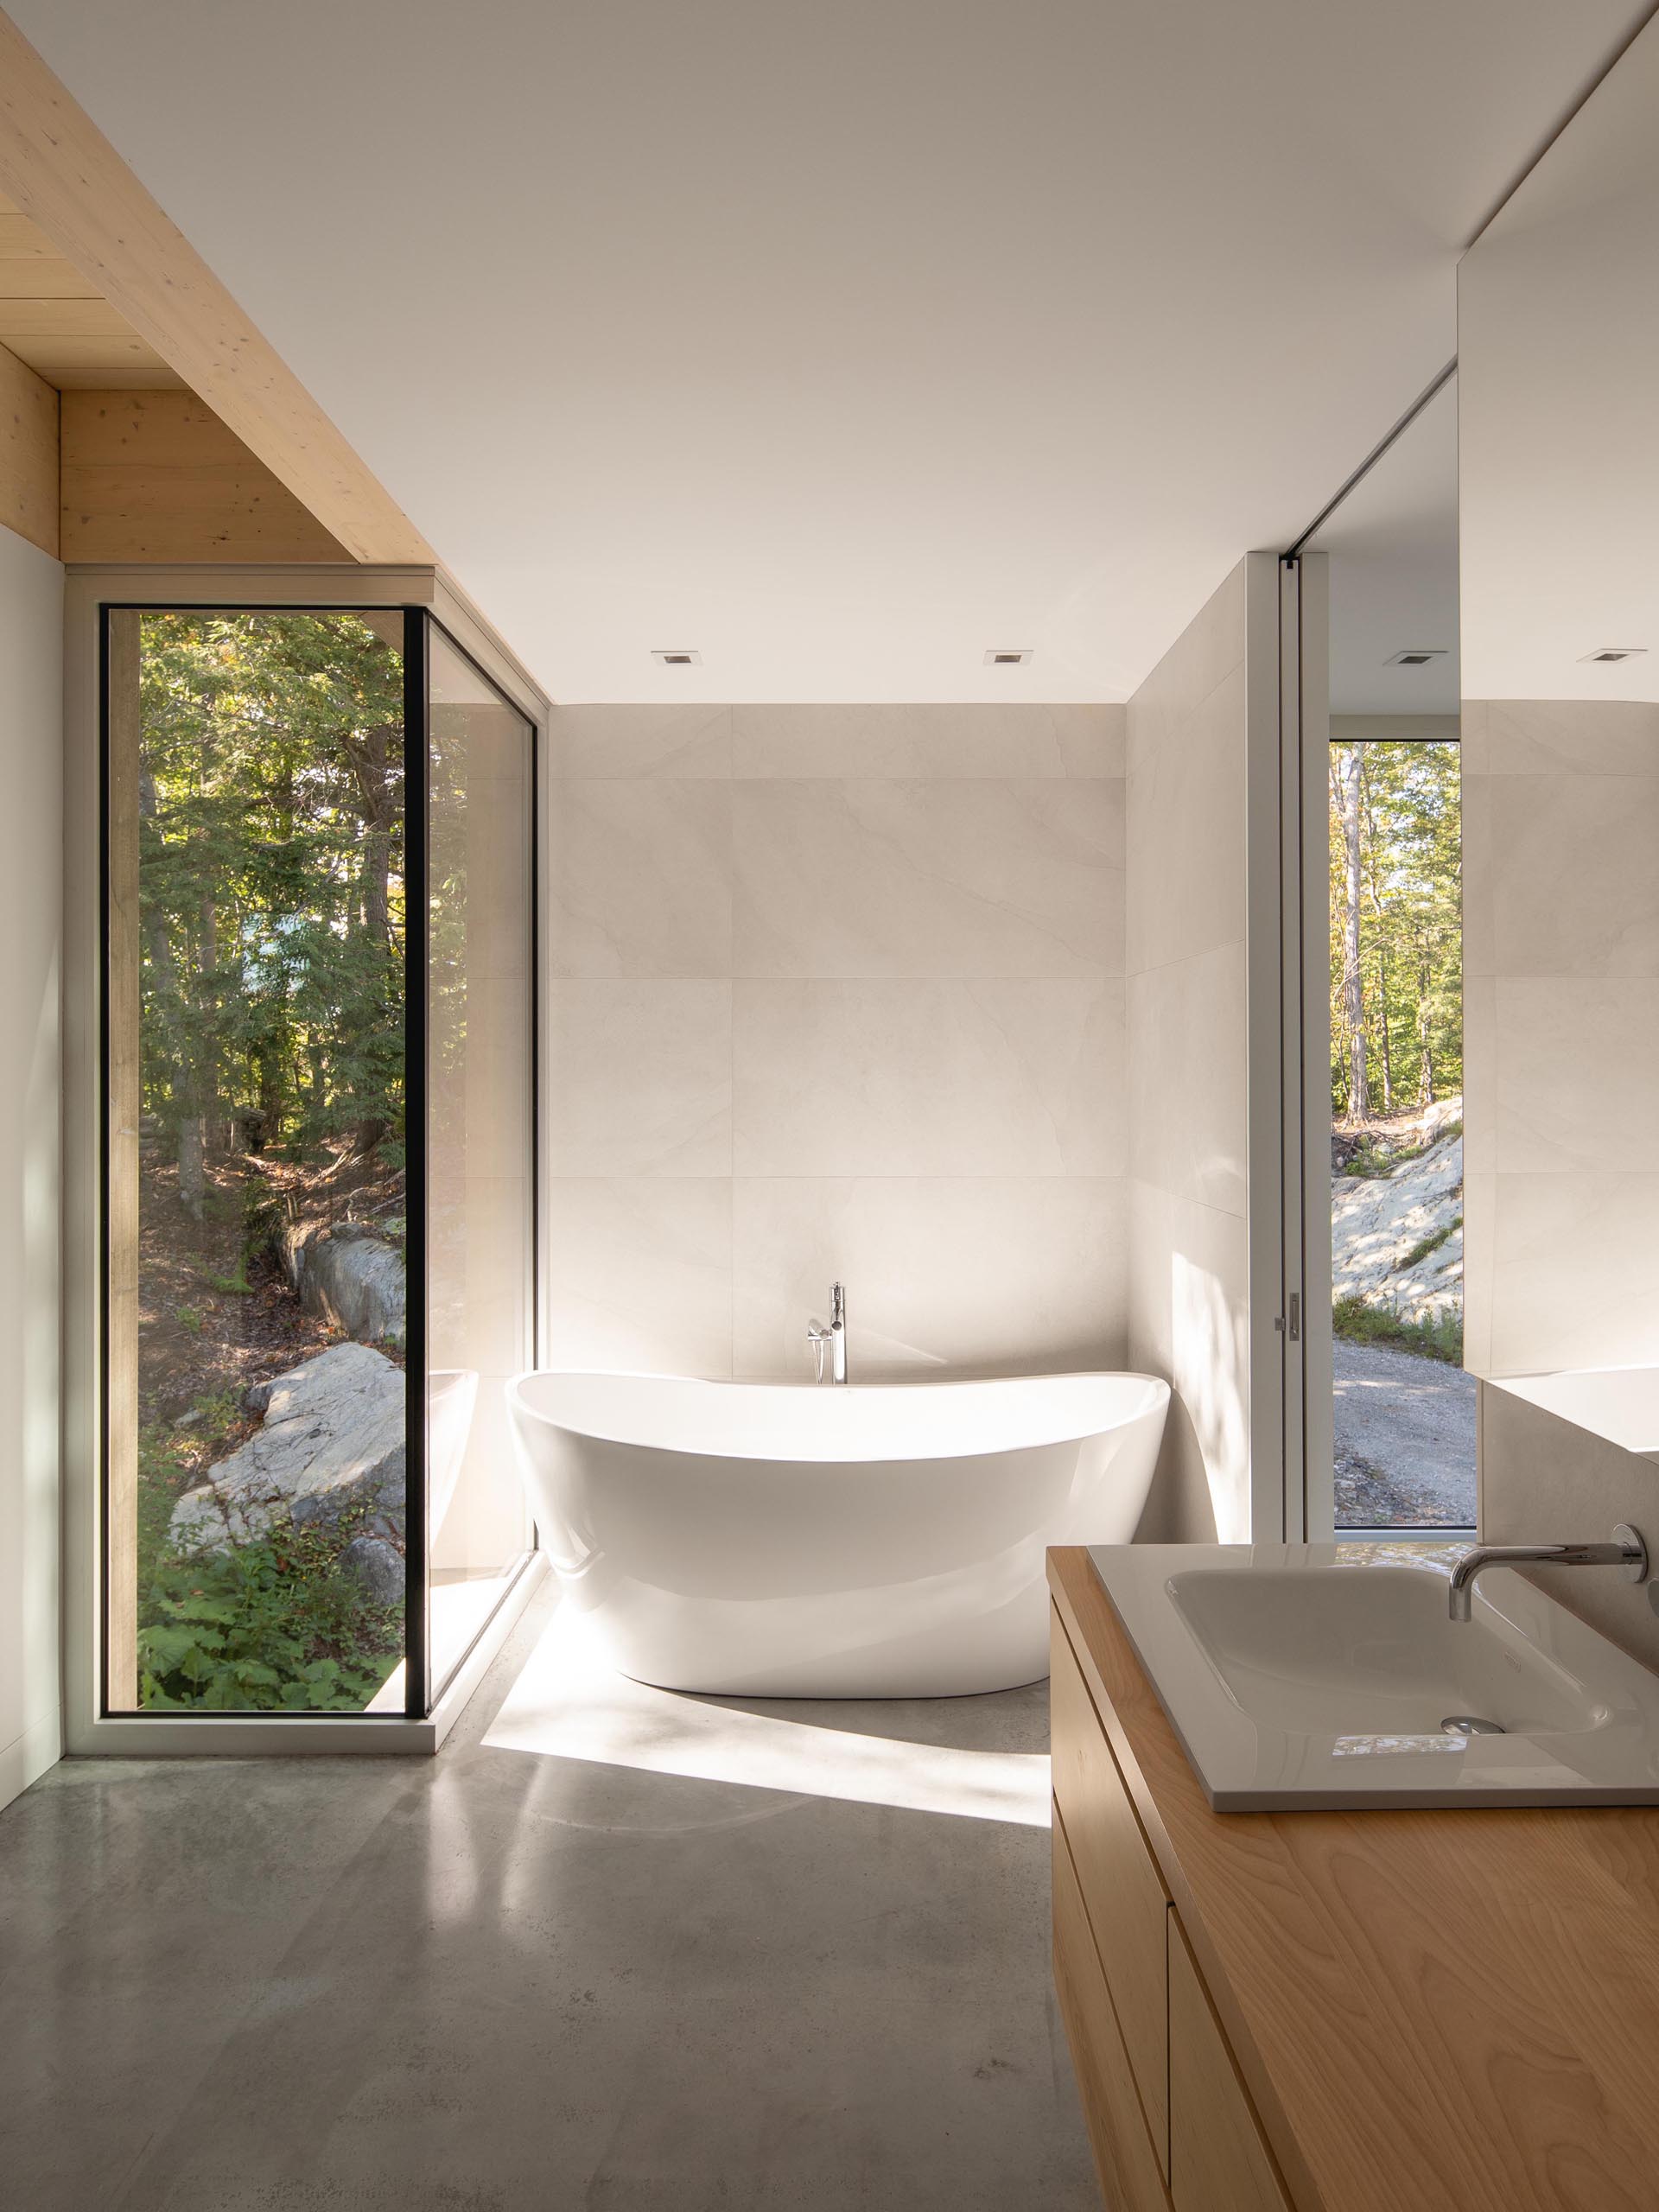 В этой современной ванной комнате есть отдельно стоящая ванна с видом на лес, а деревянный туалетный столик добавляет естественности.